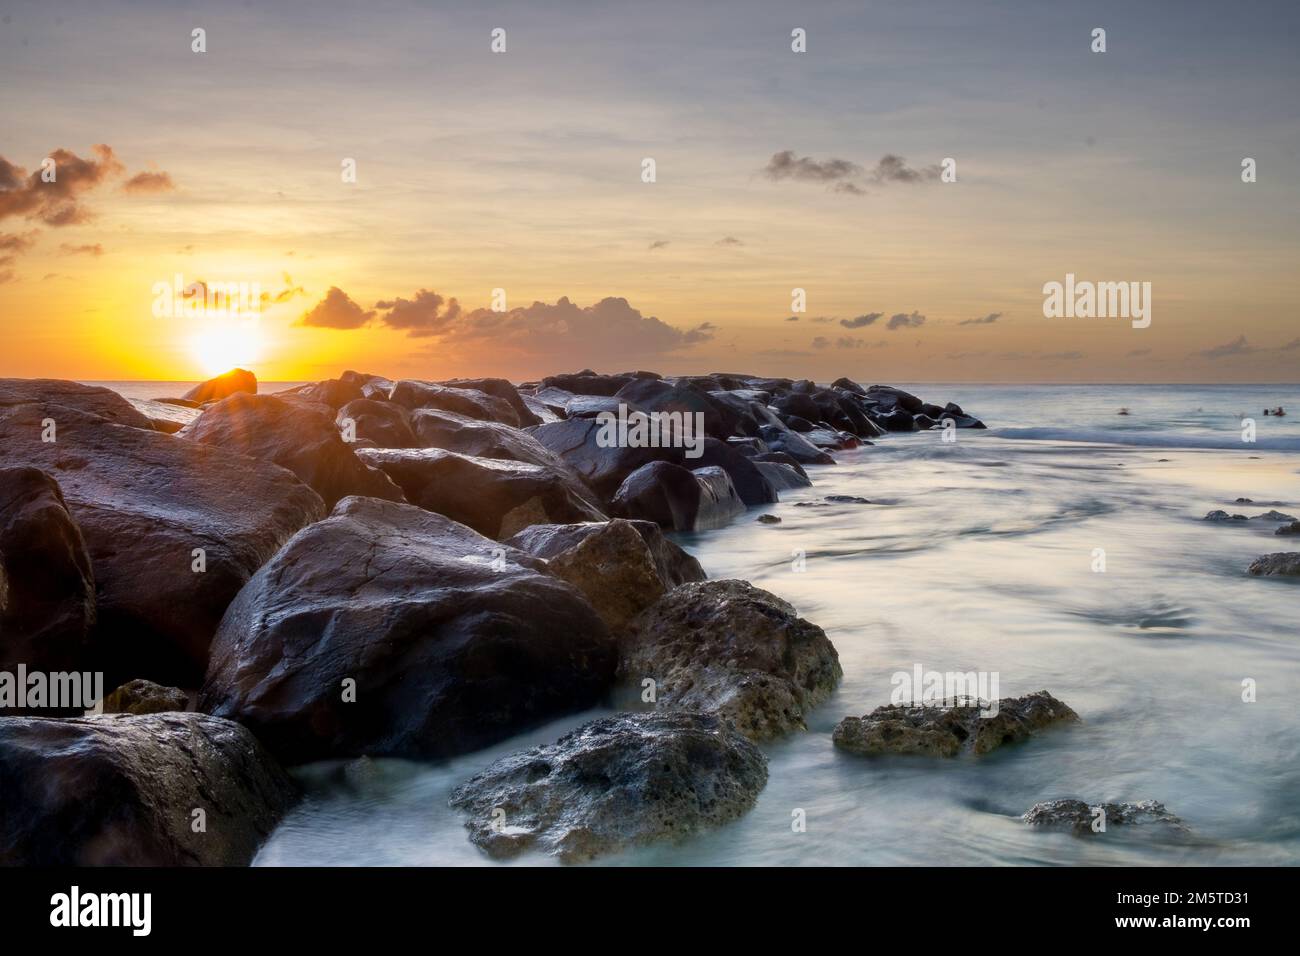 Puesta de sol tranquila con grandes piedras entrando en el mar Foto de stock